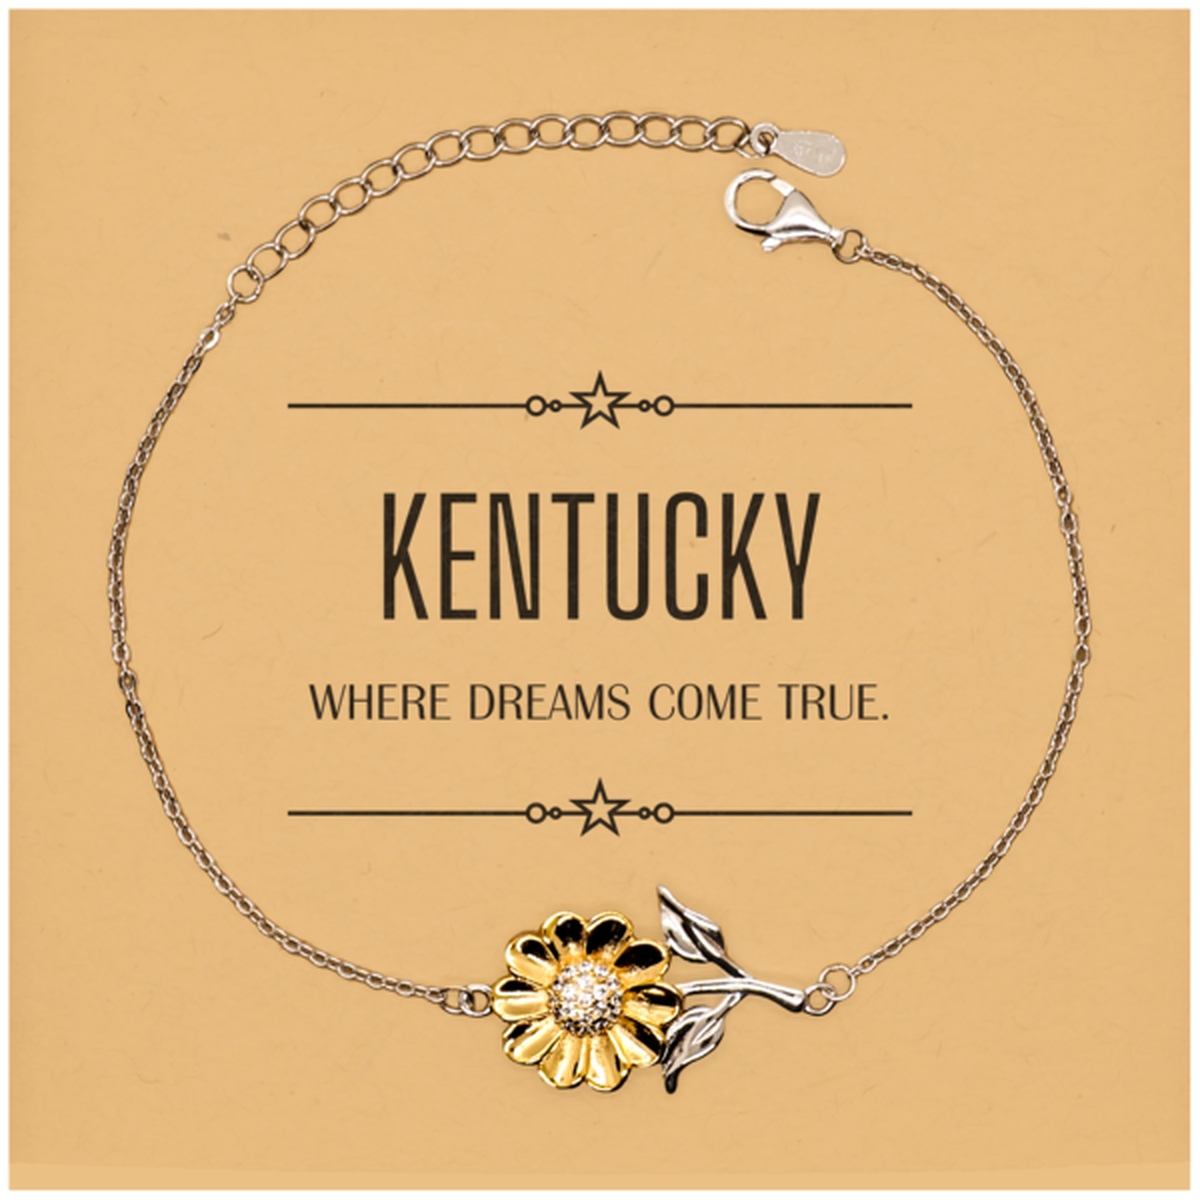 Love Kentucky State Sunflower Bracelet, Kentucky Where dreams come true, Birthday Christmas Inspirational Gifts For Kentucky Men, Women, Friends